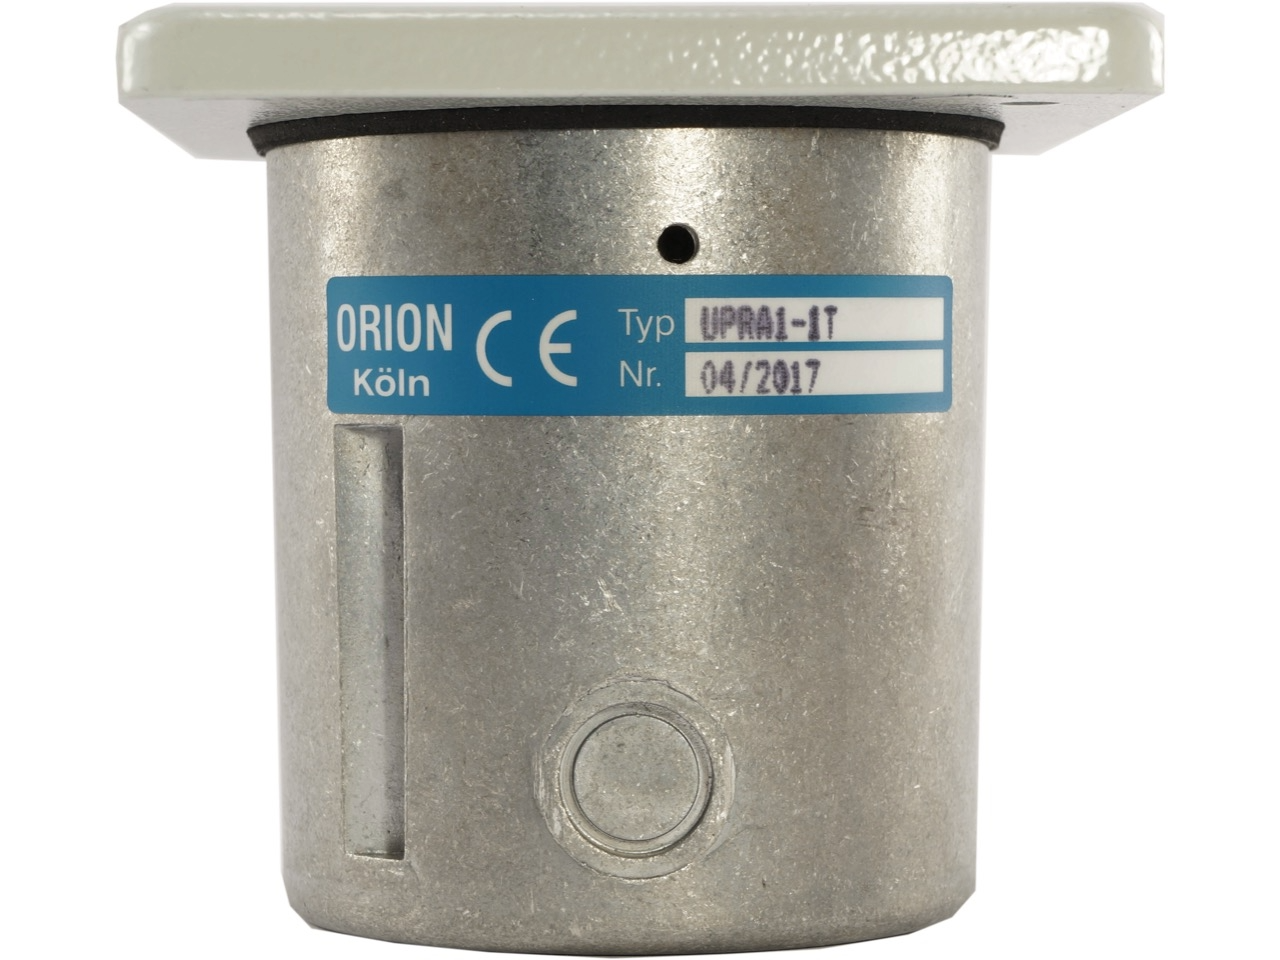 Orion UPRA 1-1 T Schlüsseltaster Unterputz 1-seitig